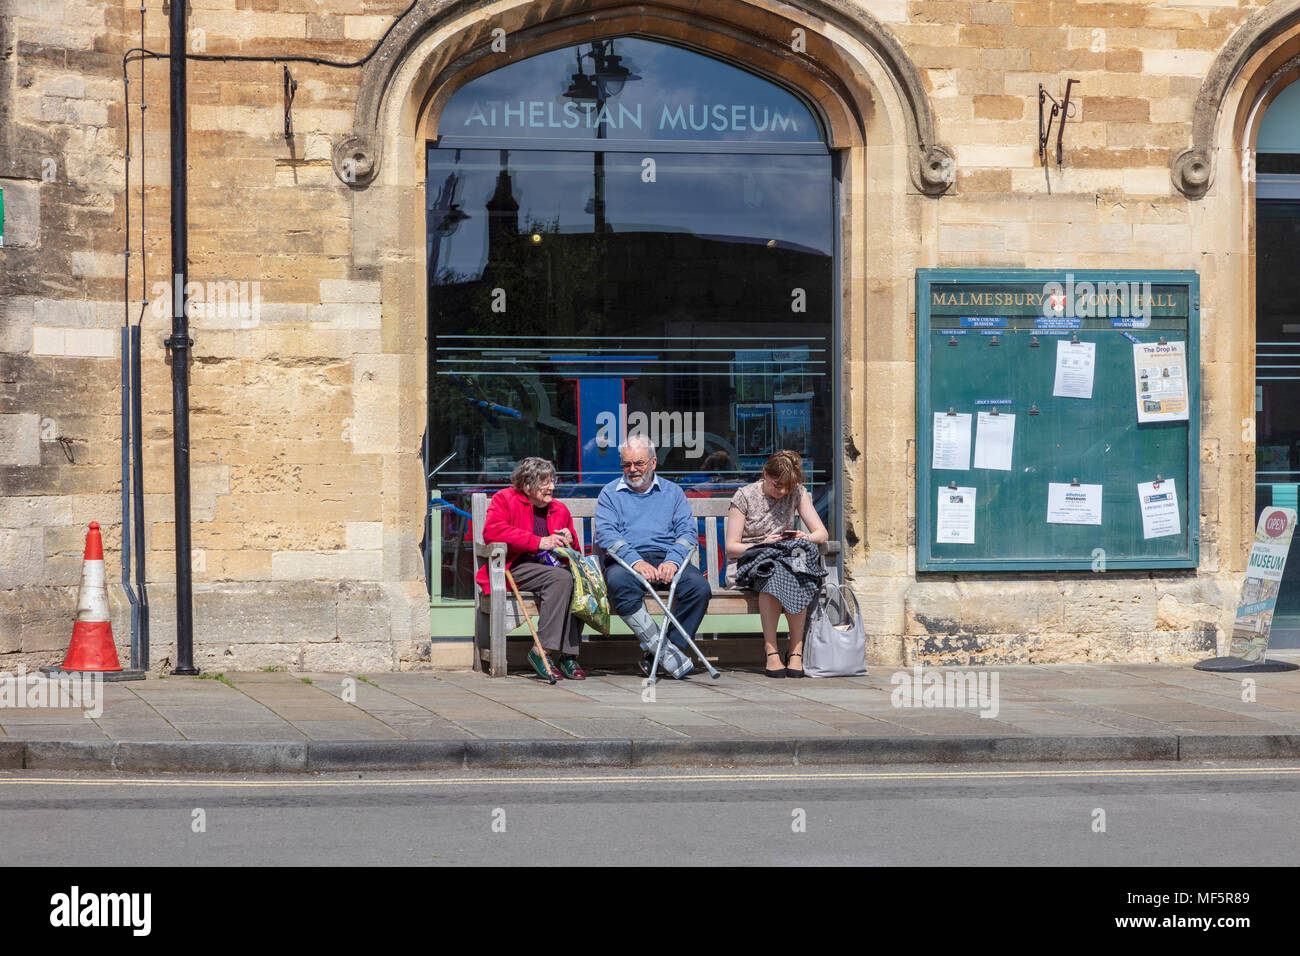 Les visiteurs de la ville de marché de Malmesbury, s'asseoir et se reposer sur des bancs à l'extérieur de l'hôtel de ville sur les Hayes, Wiltshire, Royaume-Uni Banque D'Images